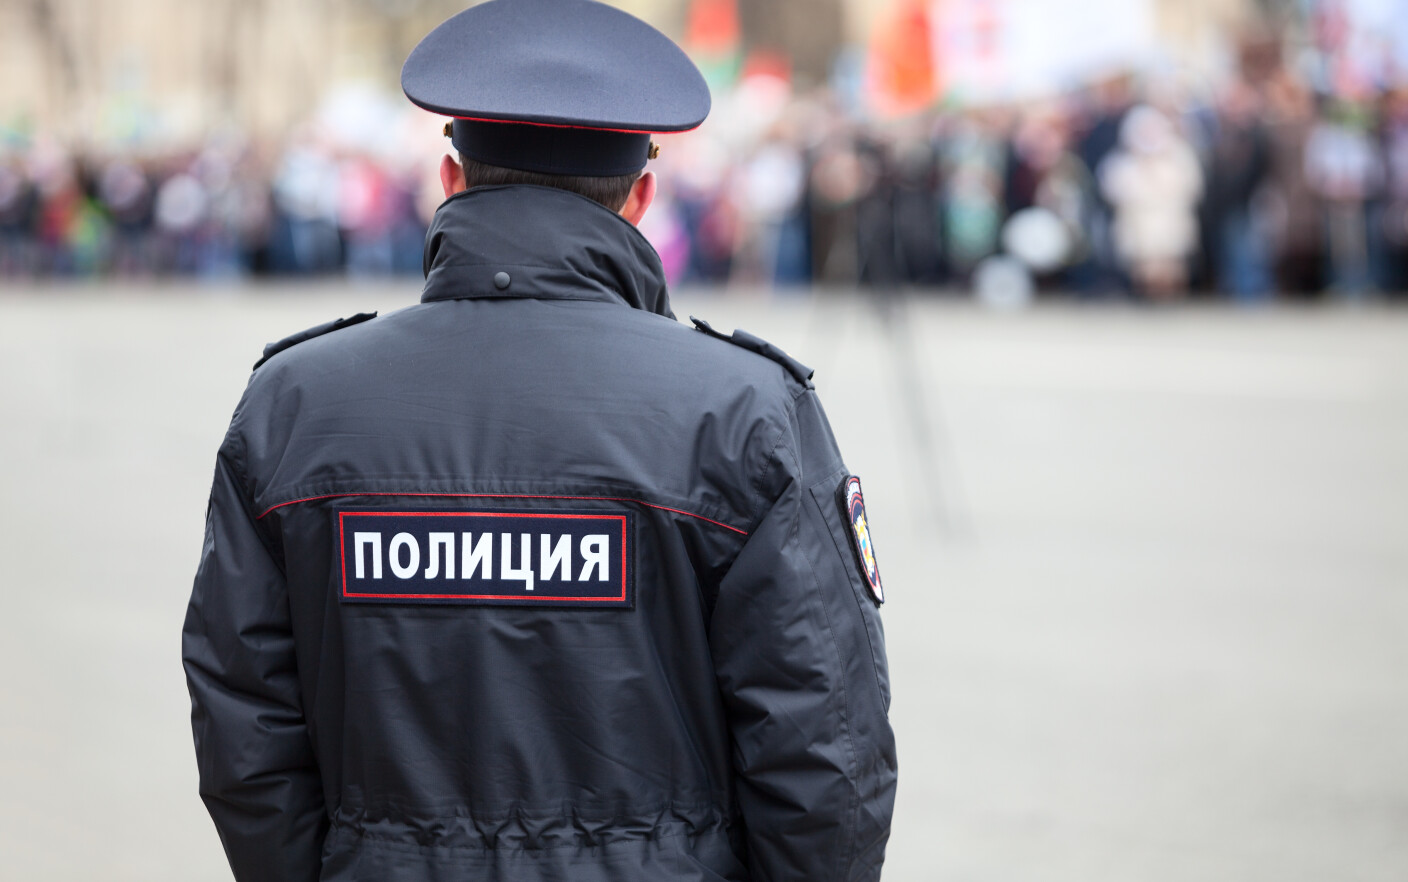 Şase polițiști au fost răniţi într-un atentat sinucigaş în Rusia